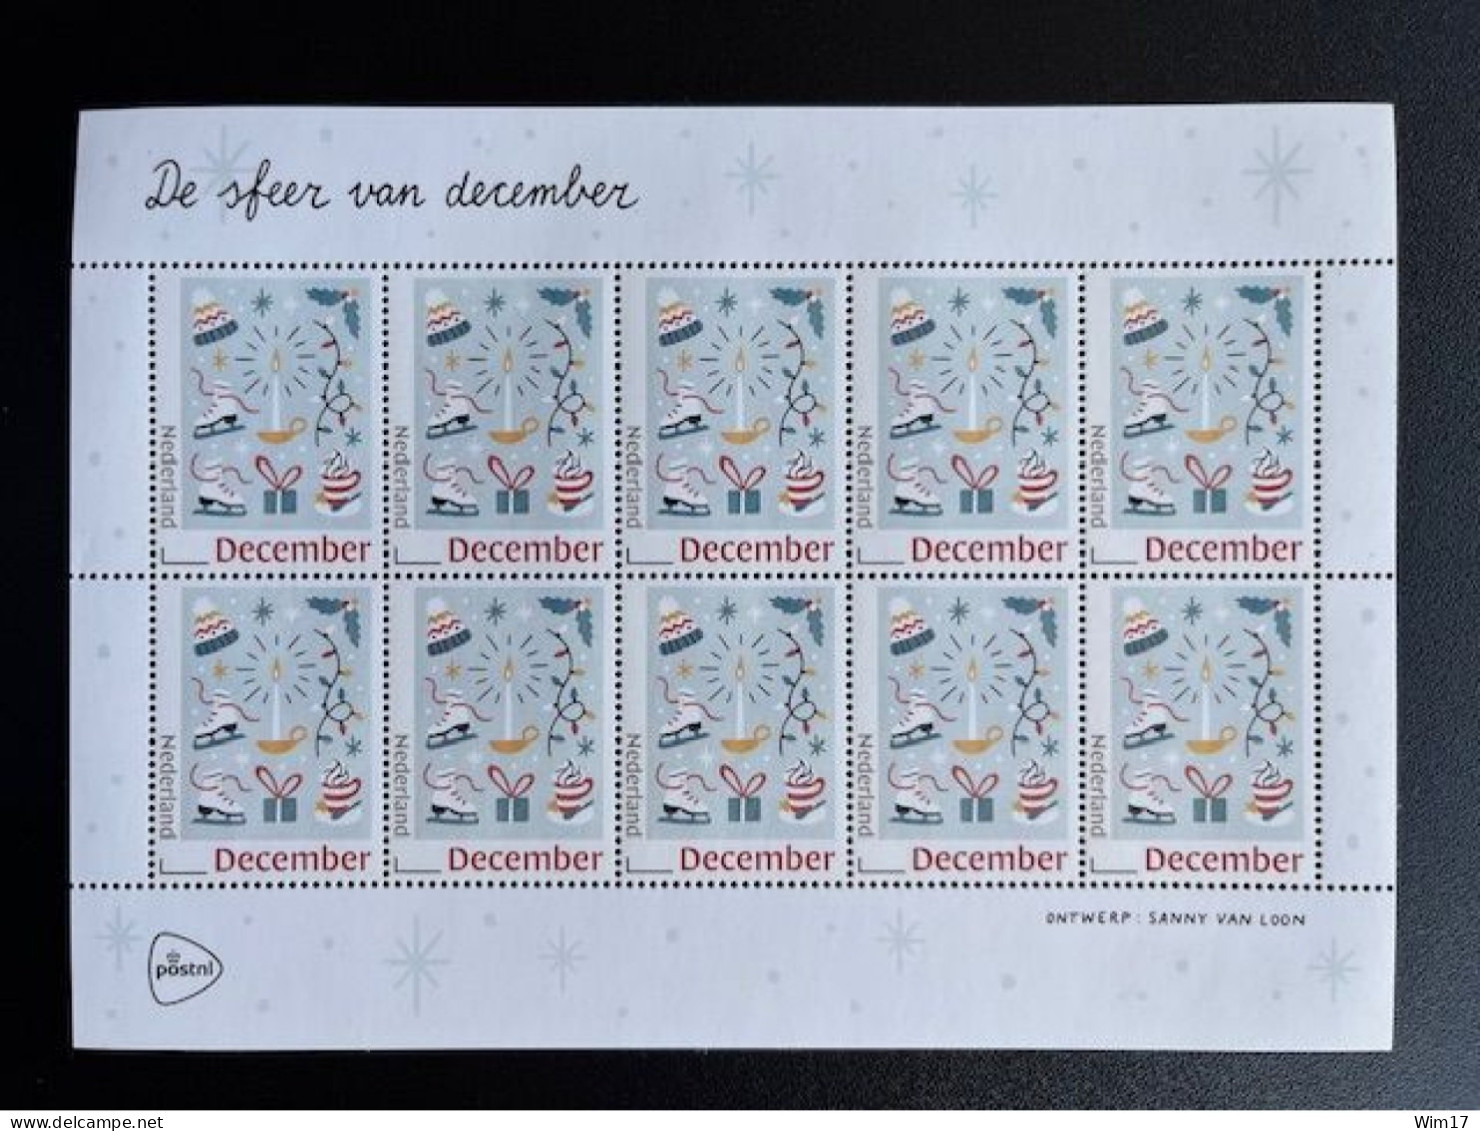 NETHERLANDS 2018 CHRISTMAS STAMPS SHEET OF 10 MNH 05-11-2018 NEDERLAND DECEMBERZEGELS NVPH 3697 - Lettres & Documents